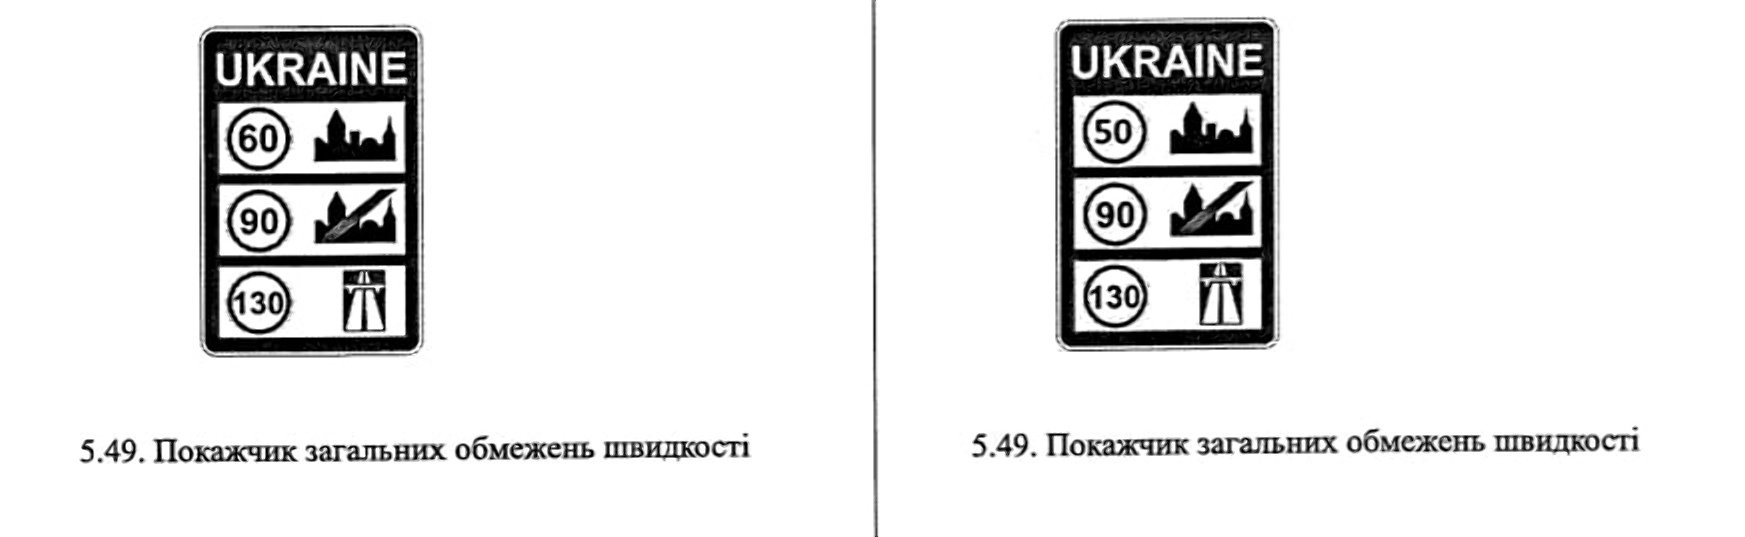 На украинских дорогах появятся новые дорожные знаки: детали